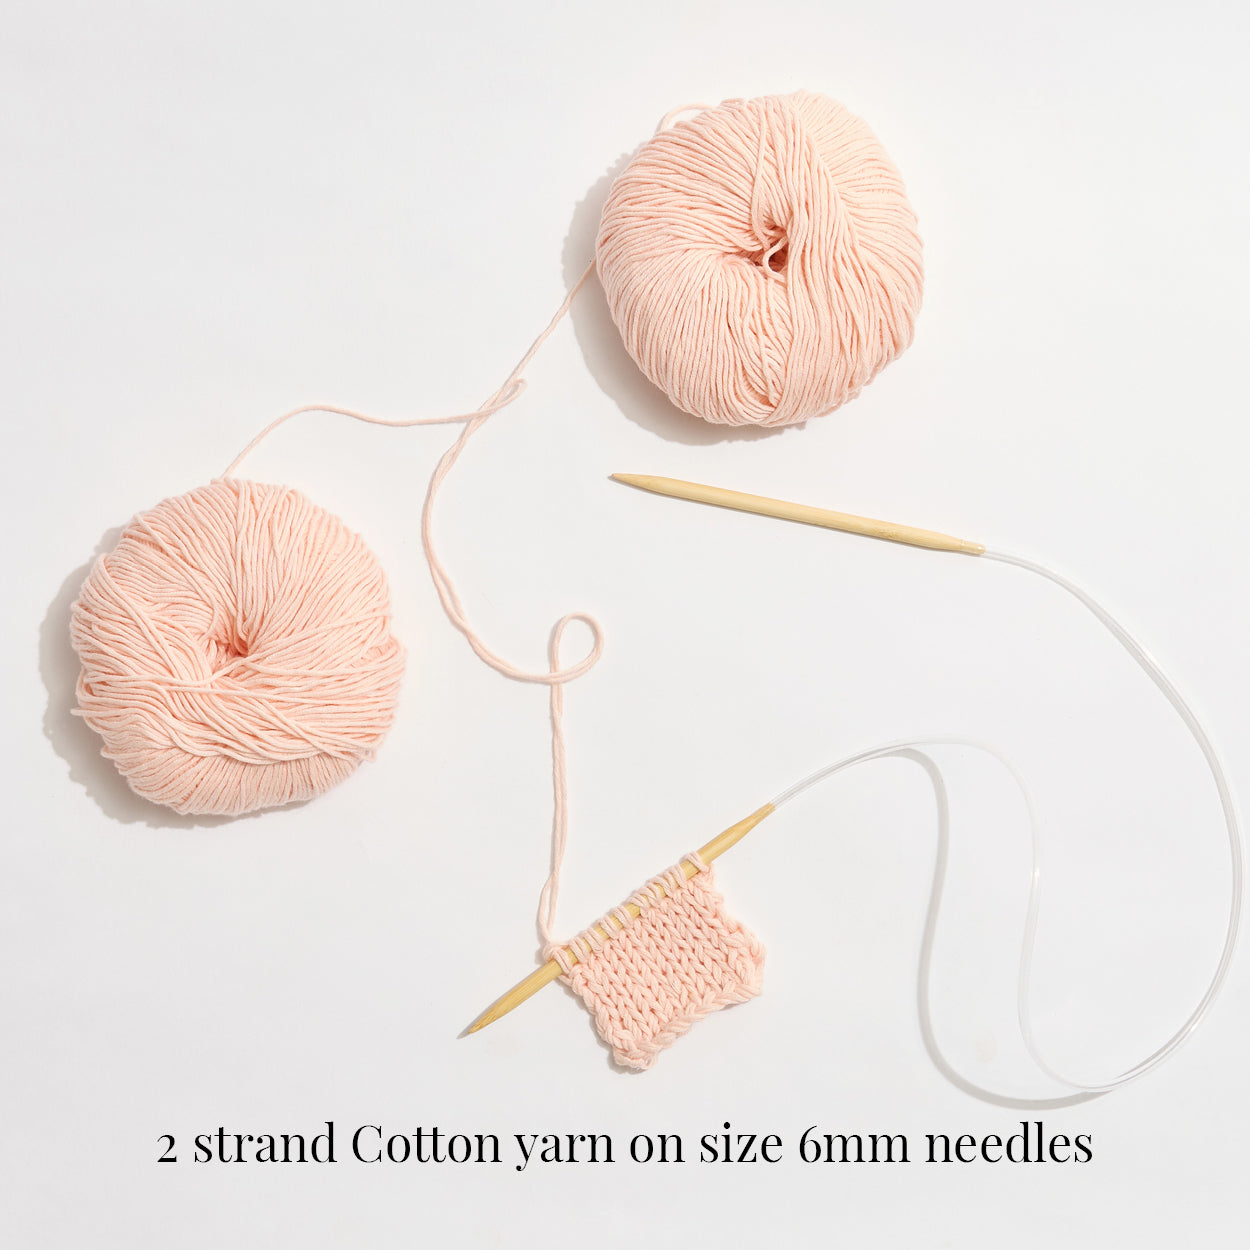 Cotton Yarn- Summer Green